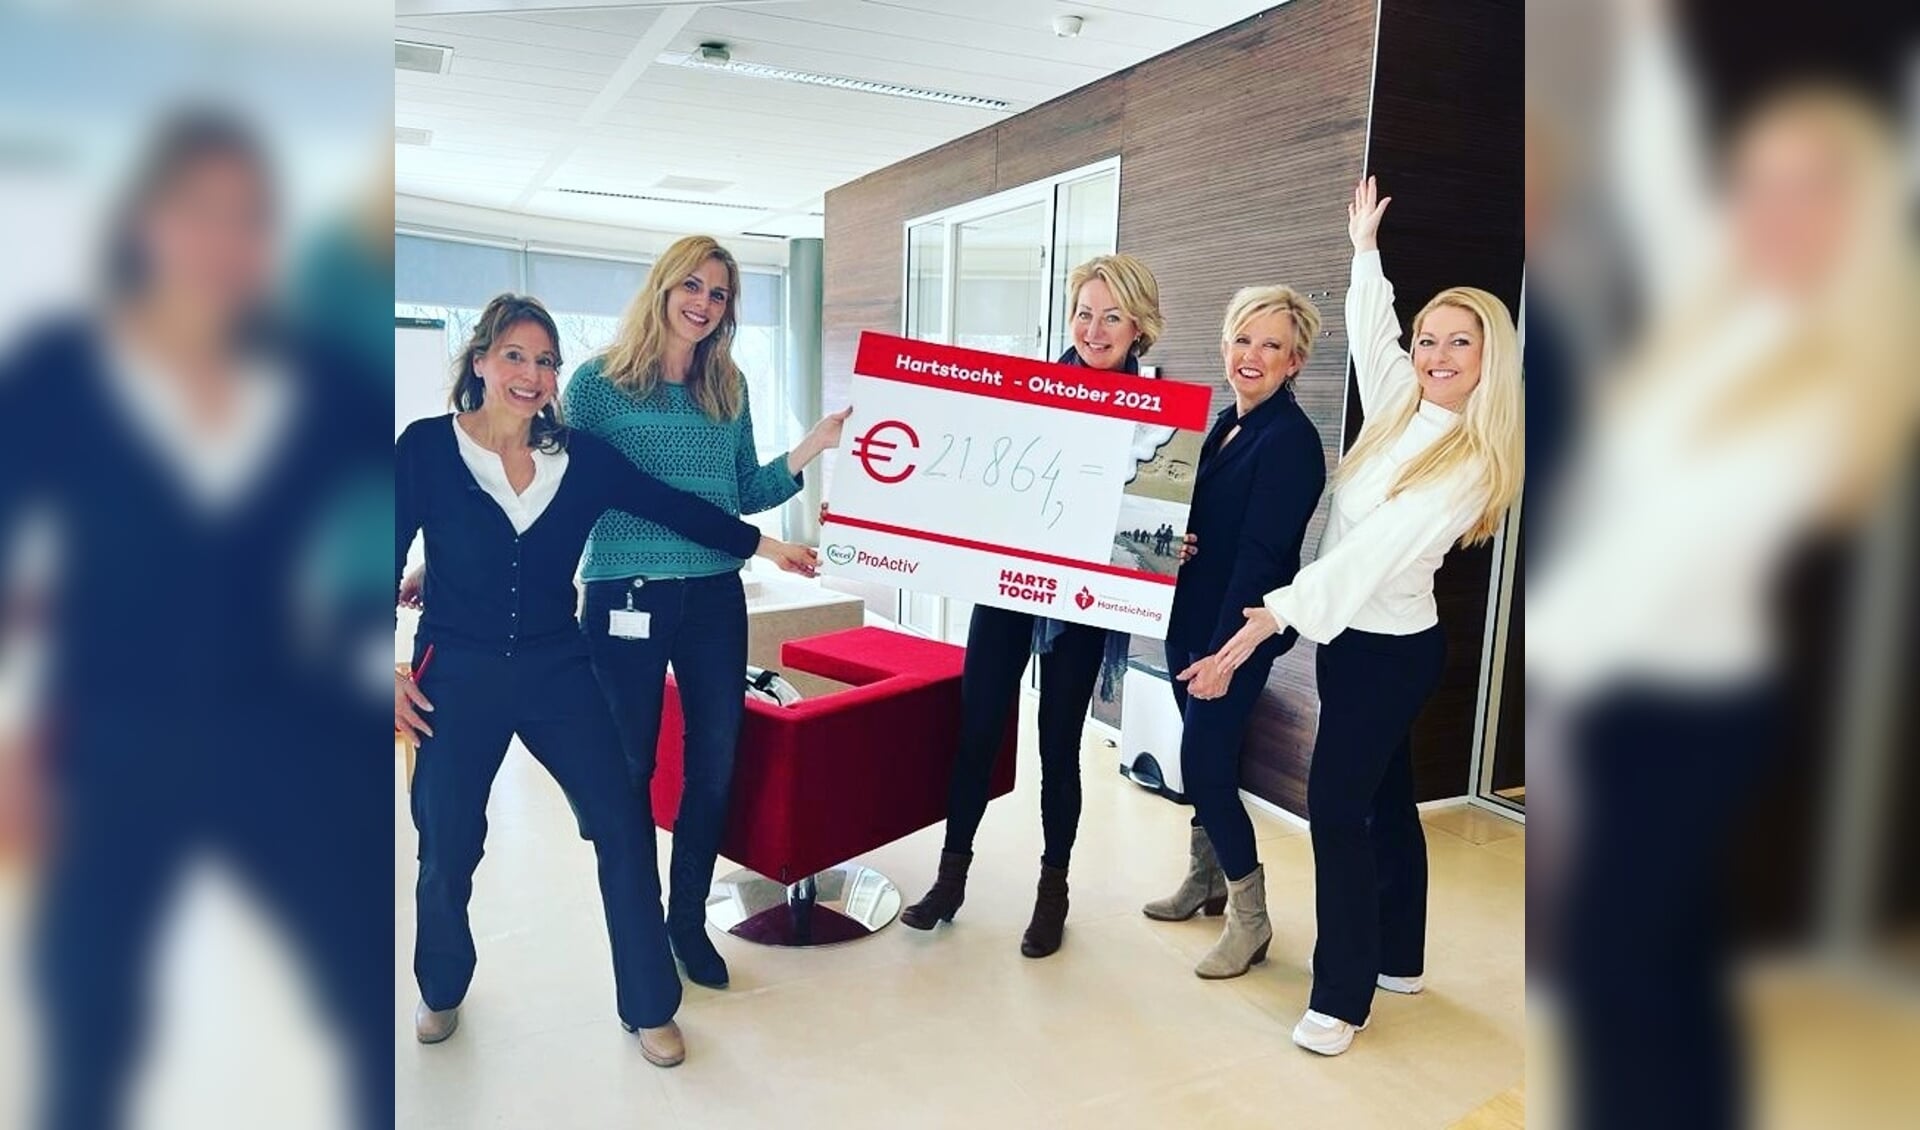 De cheque uitreiking bij de Hartstichting. Van links naar rechts: Ellen Verhofstad, Carina van Westenbrugge, Arina van Damme, Hannie van Doorn en Carola Schenk.